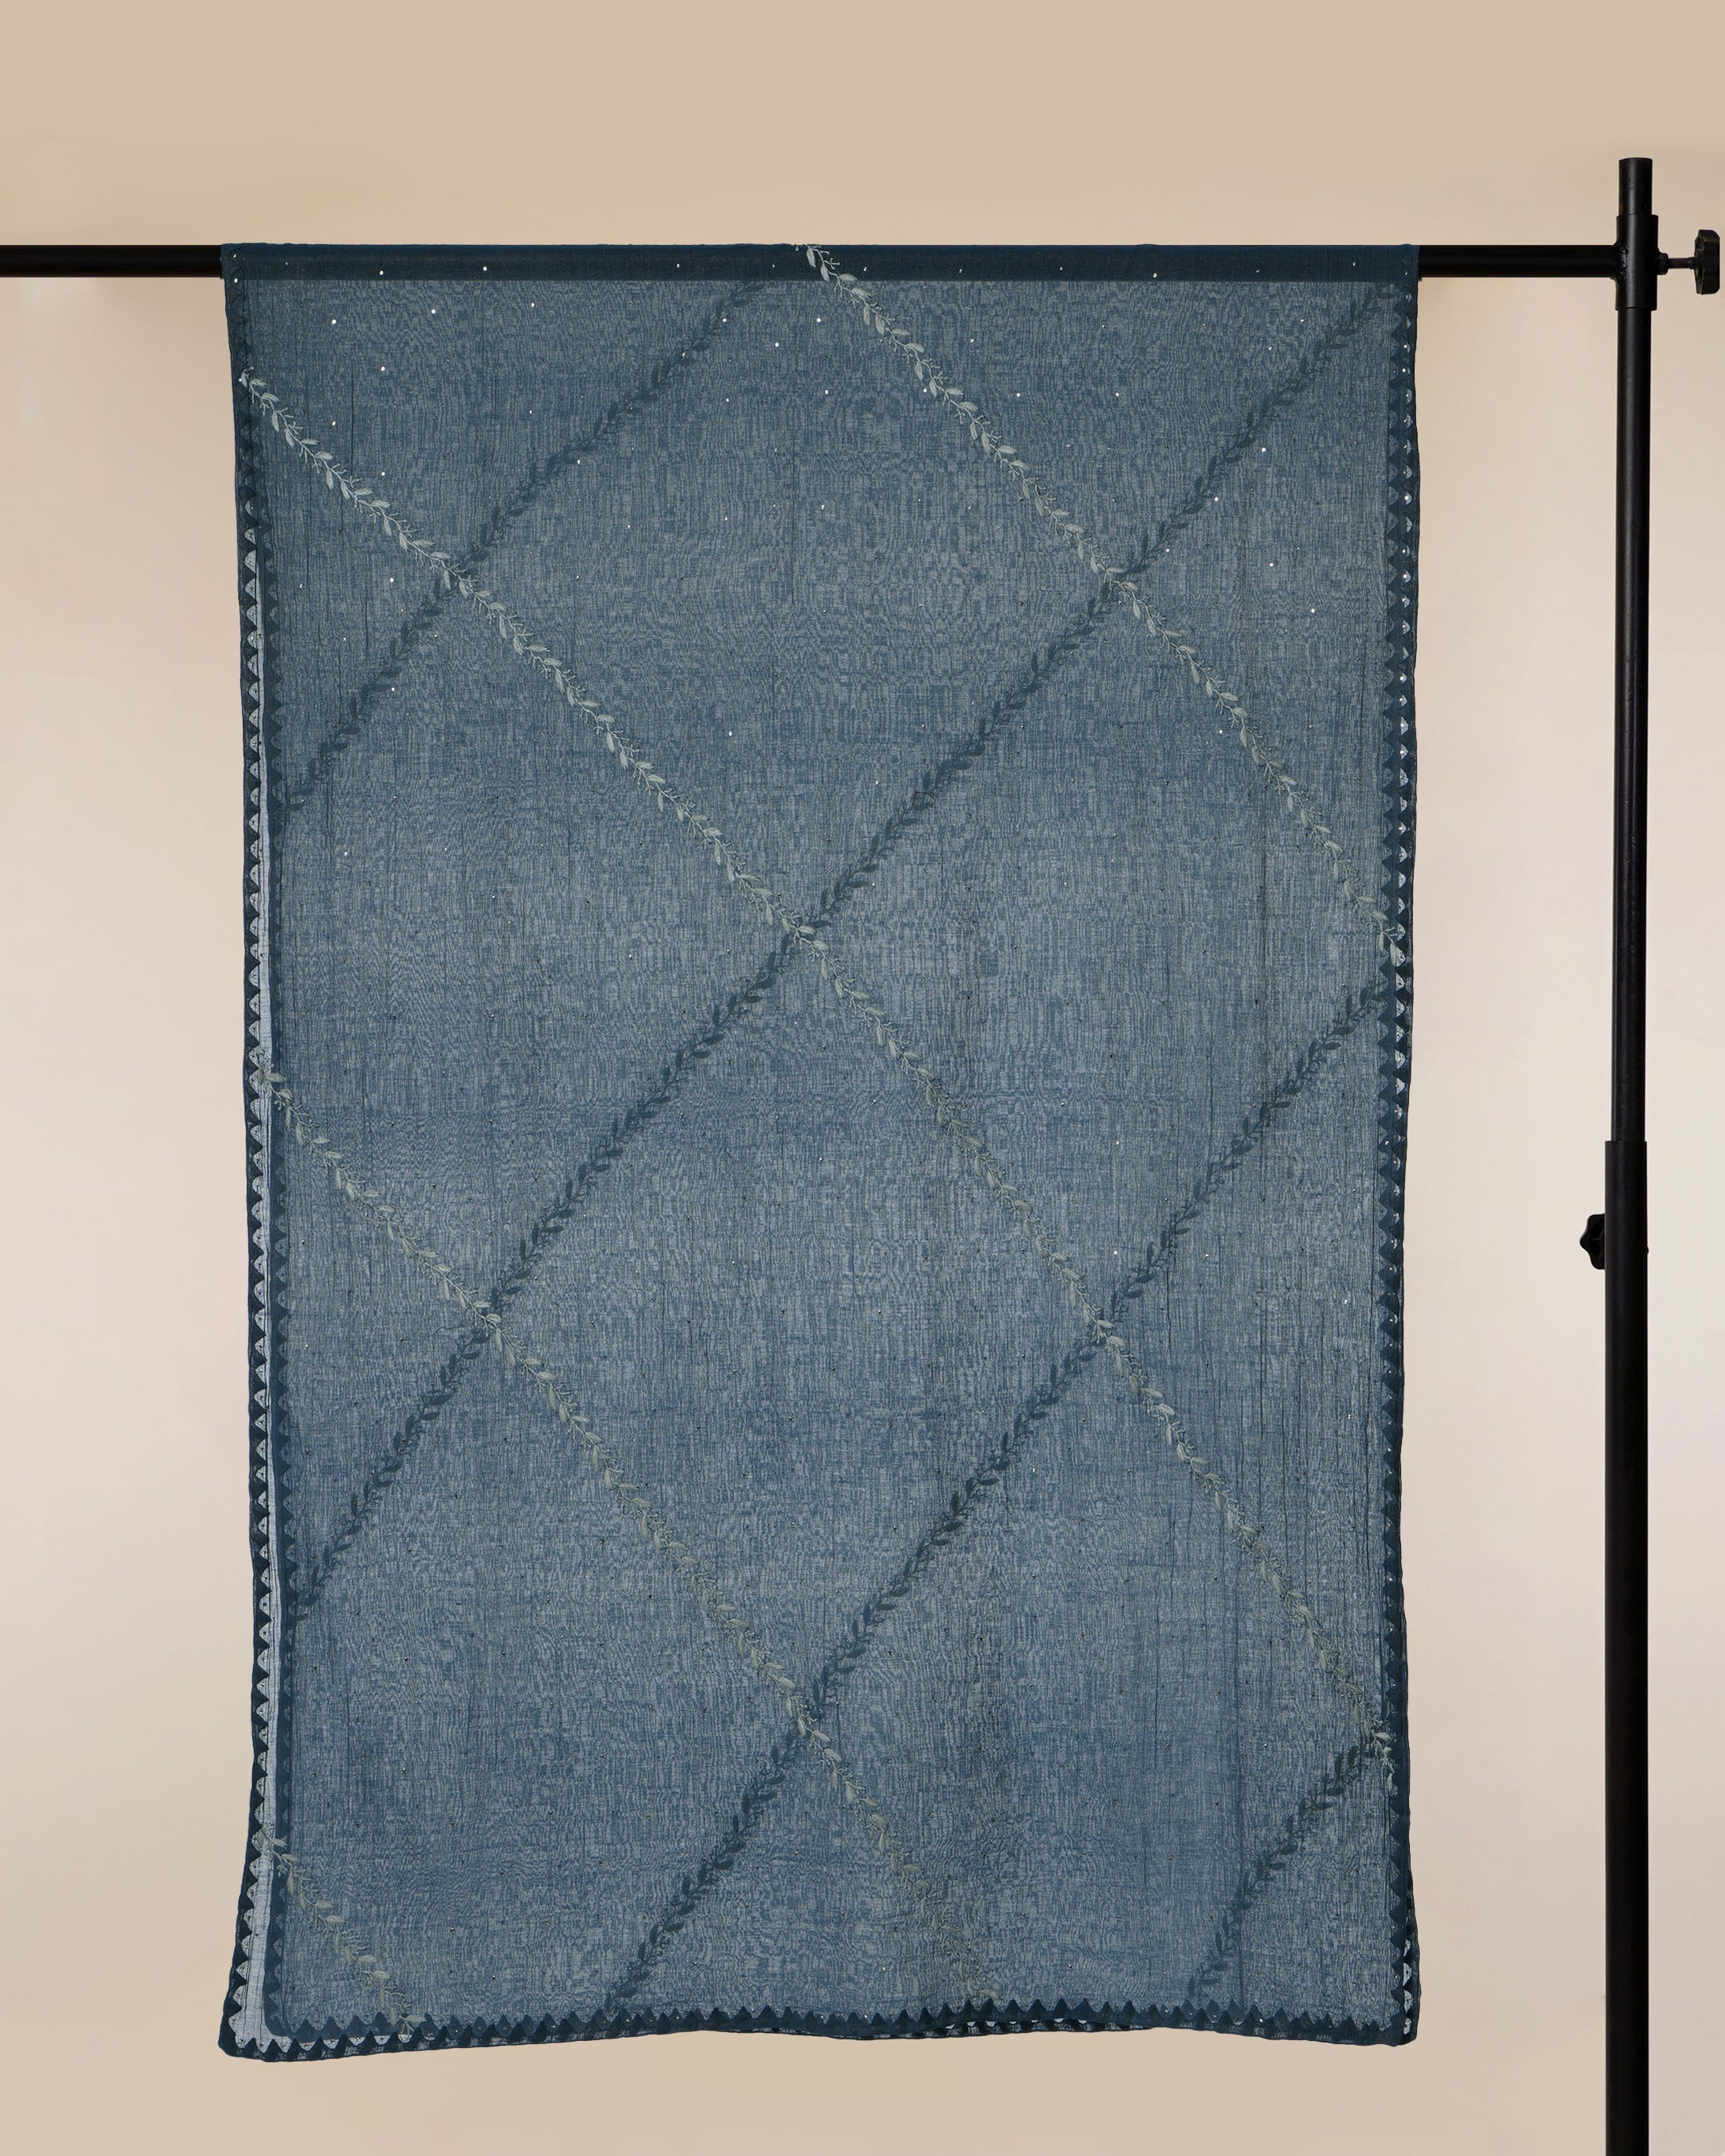 Bluesteel Handcrafted Mukaish Work Chikankari Embroidered Tissue Chanderi Unstitched Suit Set (Top & Dupatta)